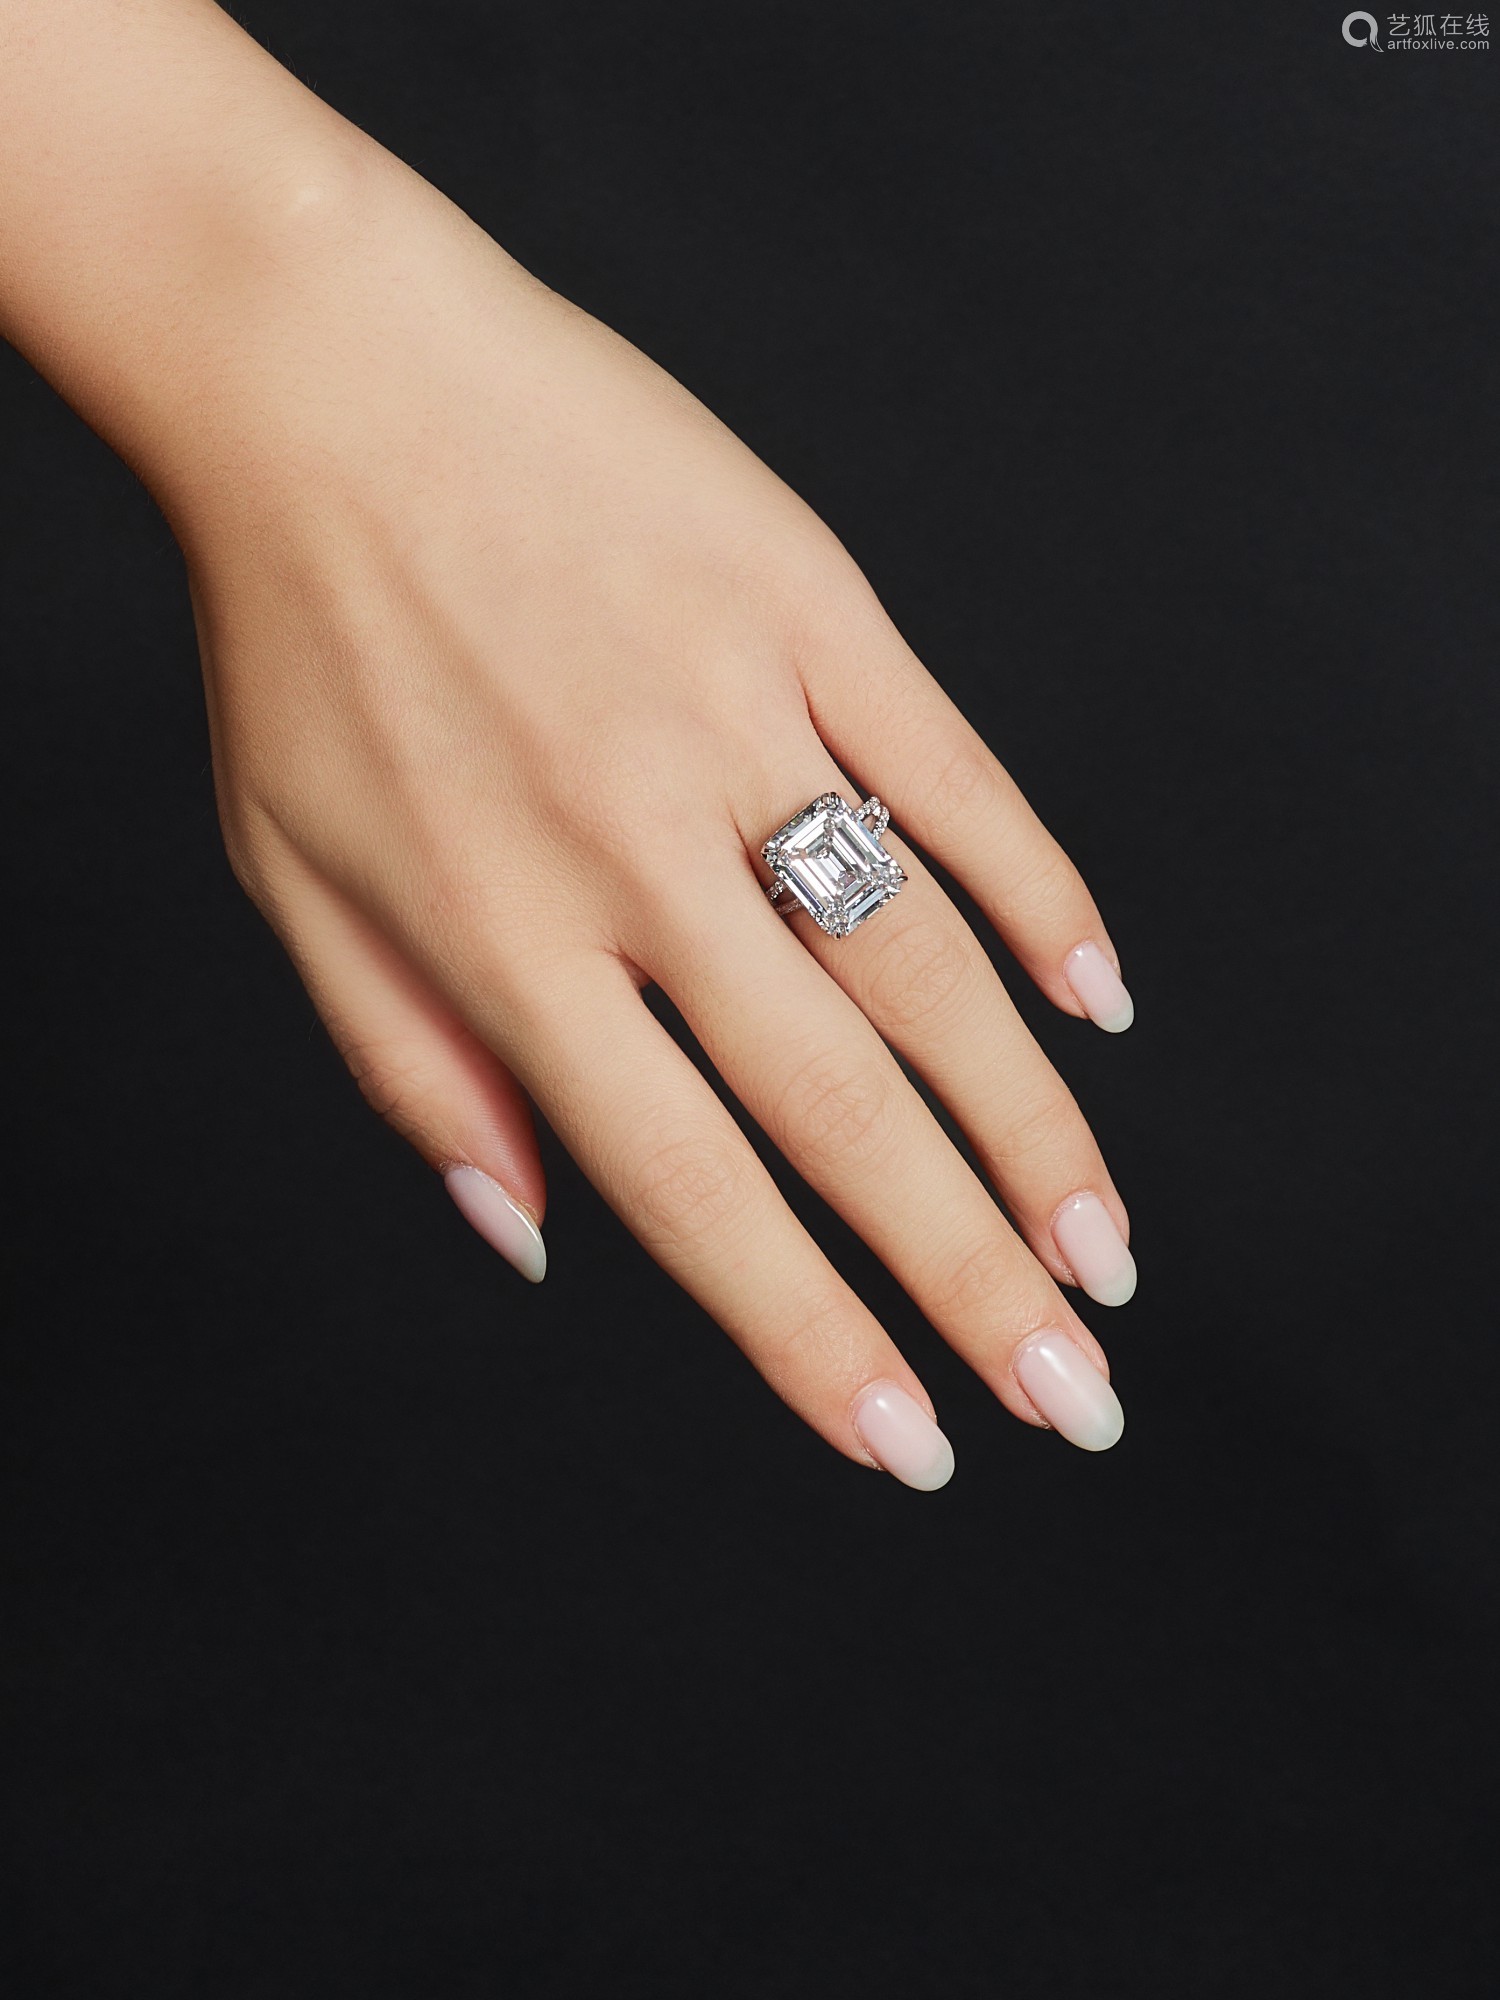 10卡拉 方形 足色全美 钻石 配 钻石 戒指